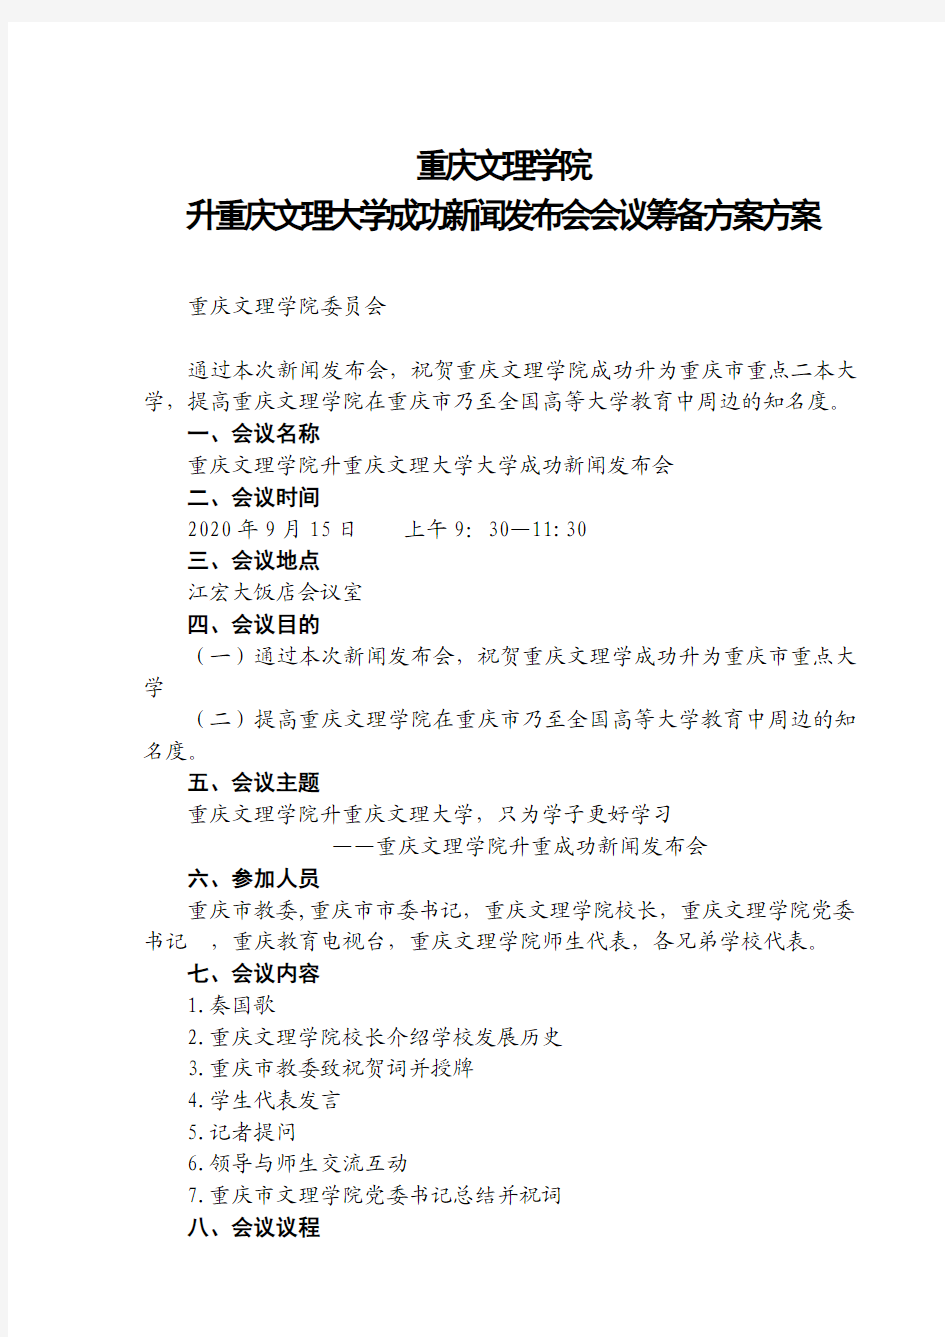 重庆文理学院2020升重庆文理大学会议筹备方案053刘欢